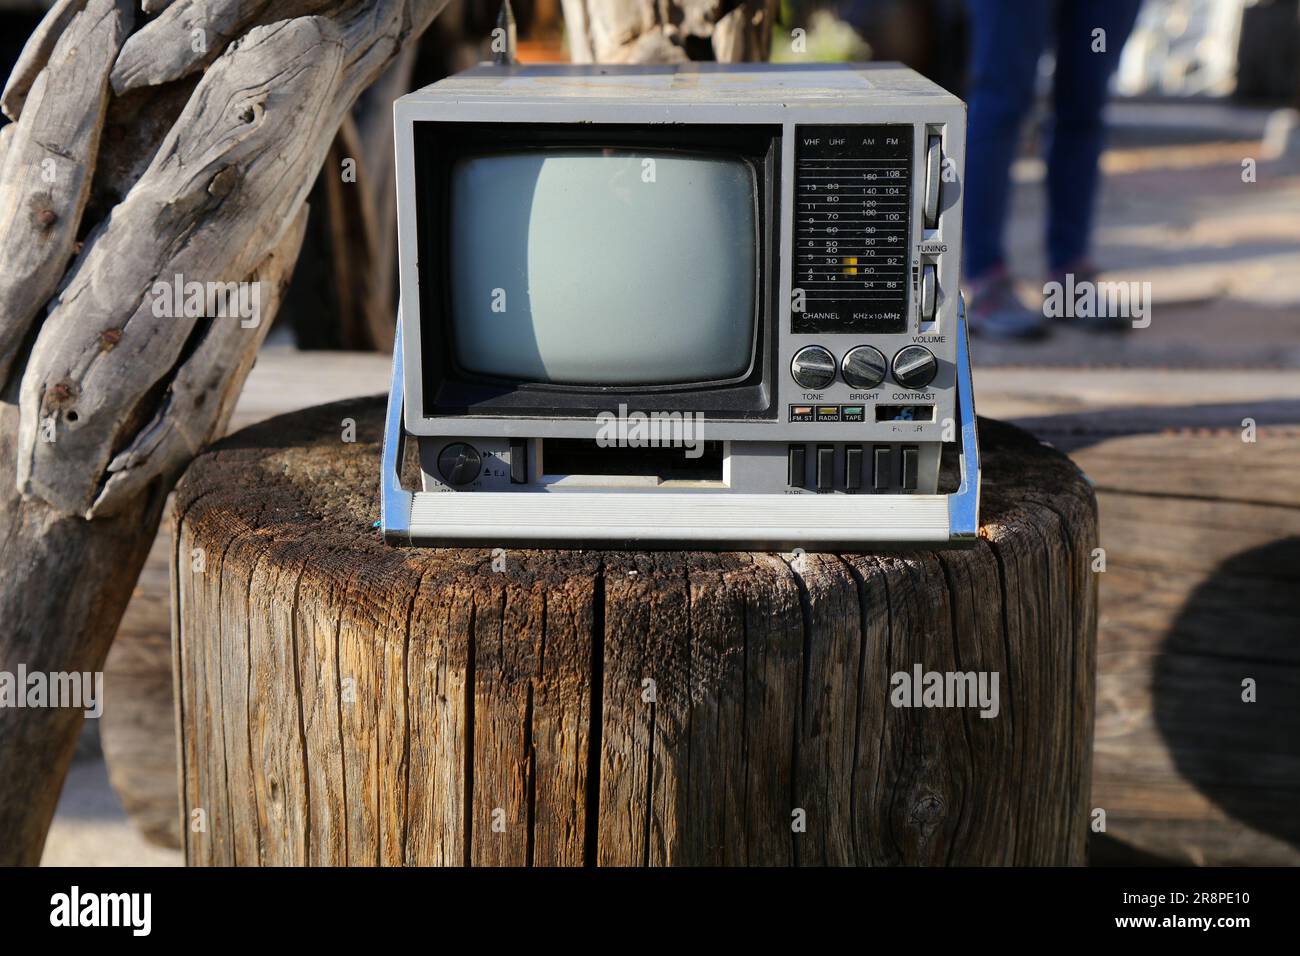 These small tv set fotografías e imágenes de alta resolución - Alamy